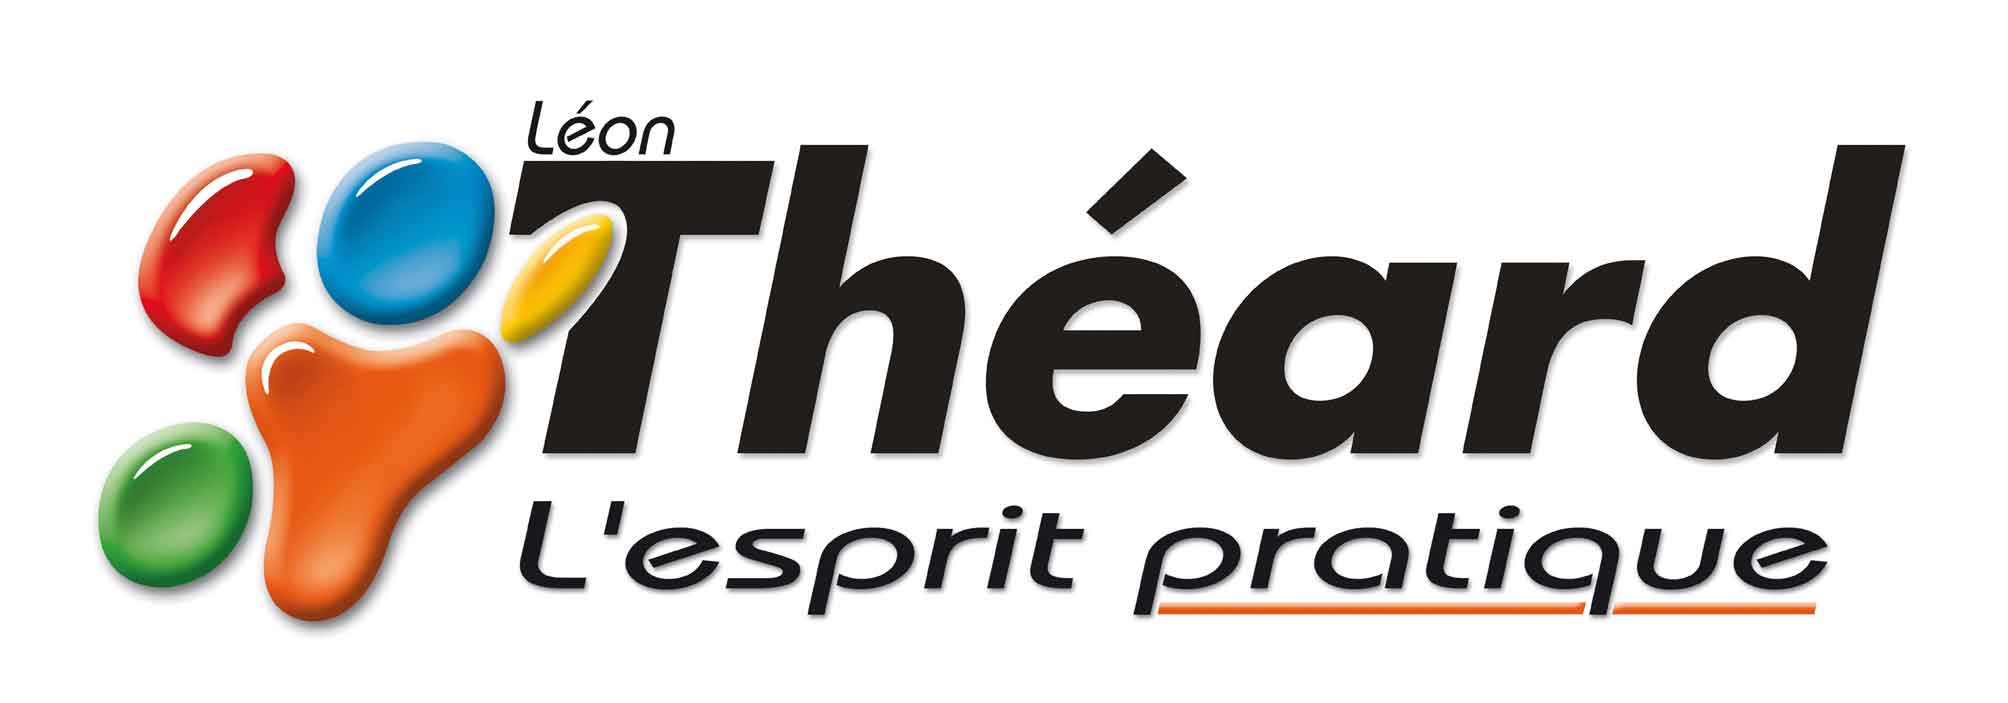 logo-Theard-conception-fabrication-distribution-produits-materiels-peintres-decorateurs